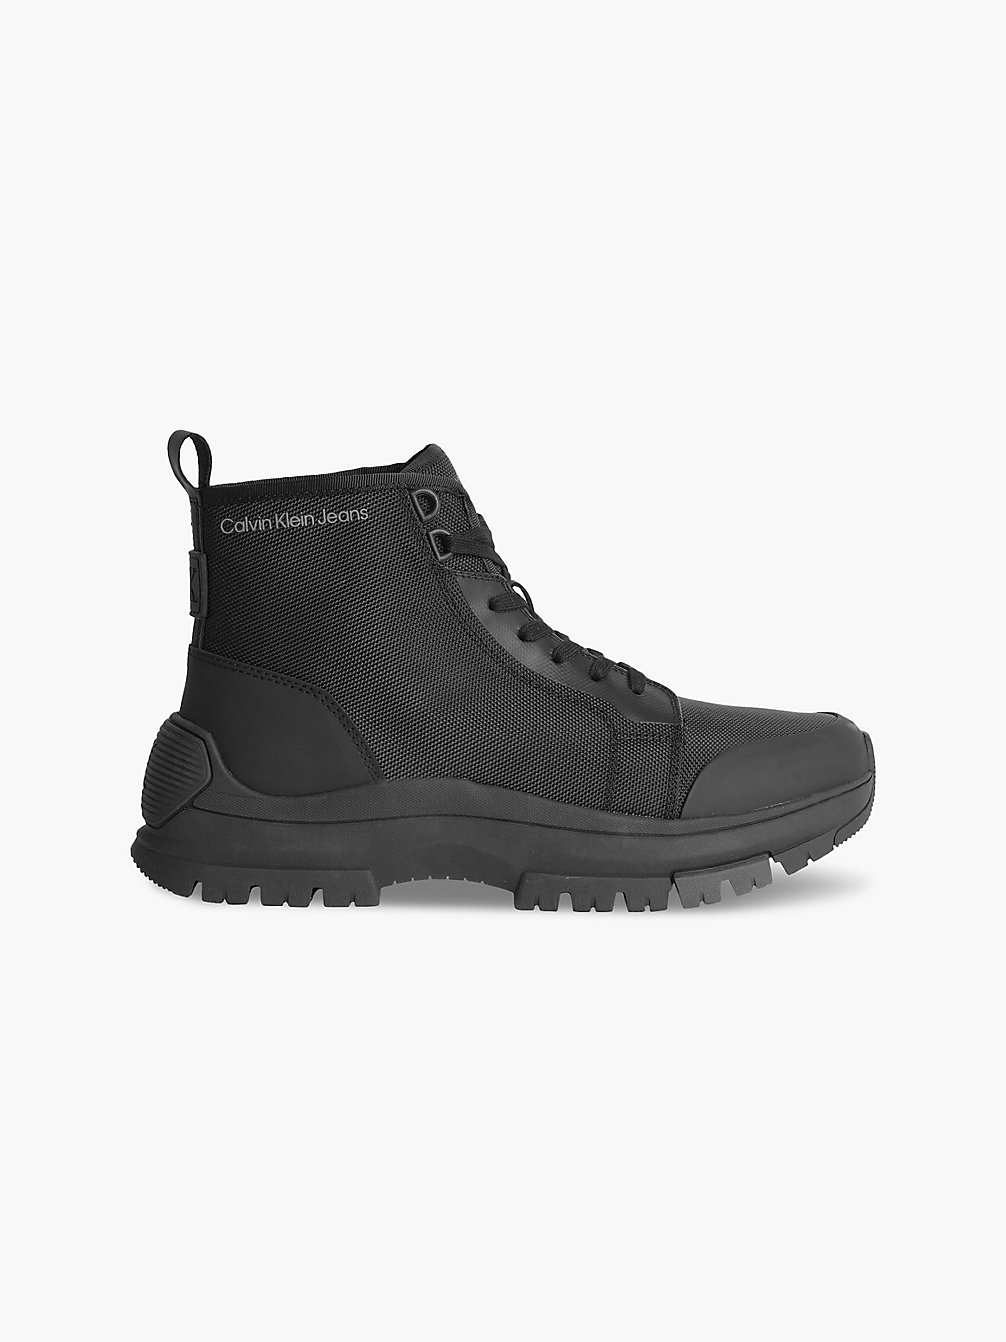 BLACK > Recycelte Hybrid Boots > undefined men - Calvin Klein